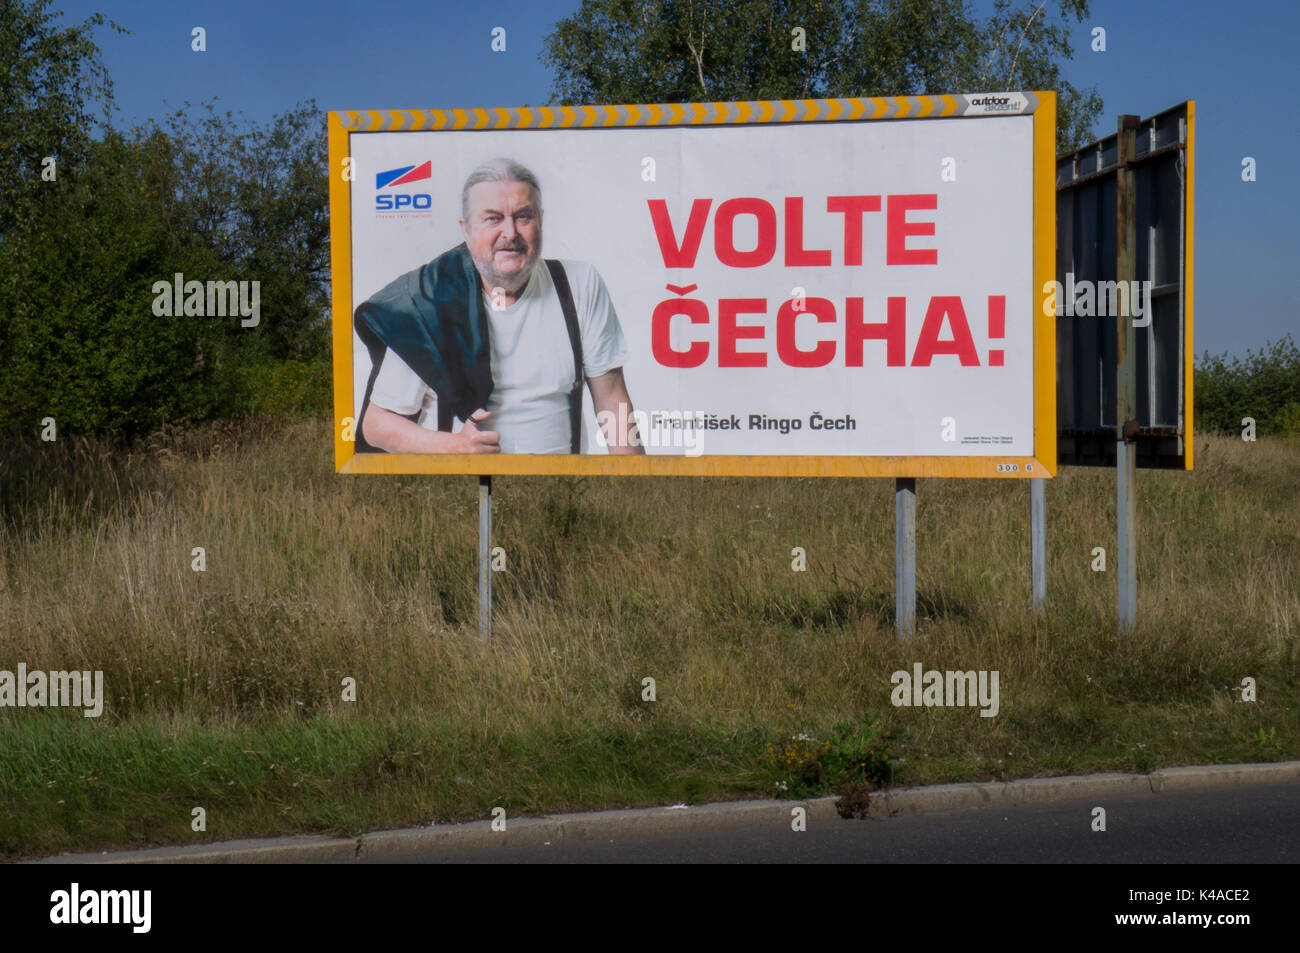 Parte de los derechos cívicos, SPO, escrito VOTAR CECHA (checo, Frantisek Ringo Cech), pre-campaña electoral billboard, Praga, República Checa, 4 de septiembre de 20 Foto de stock